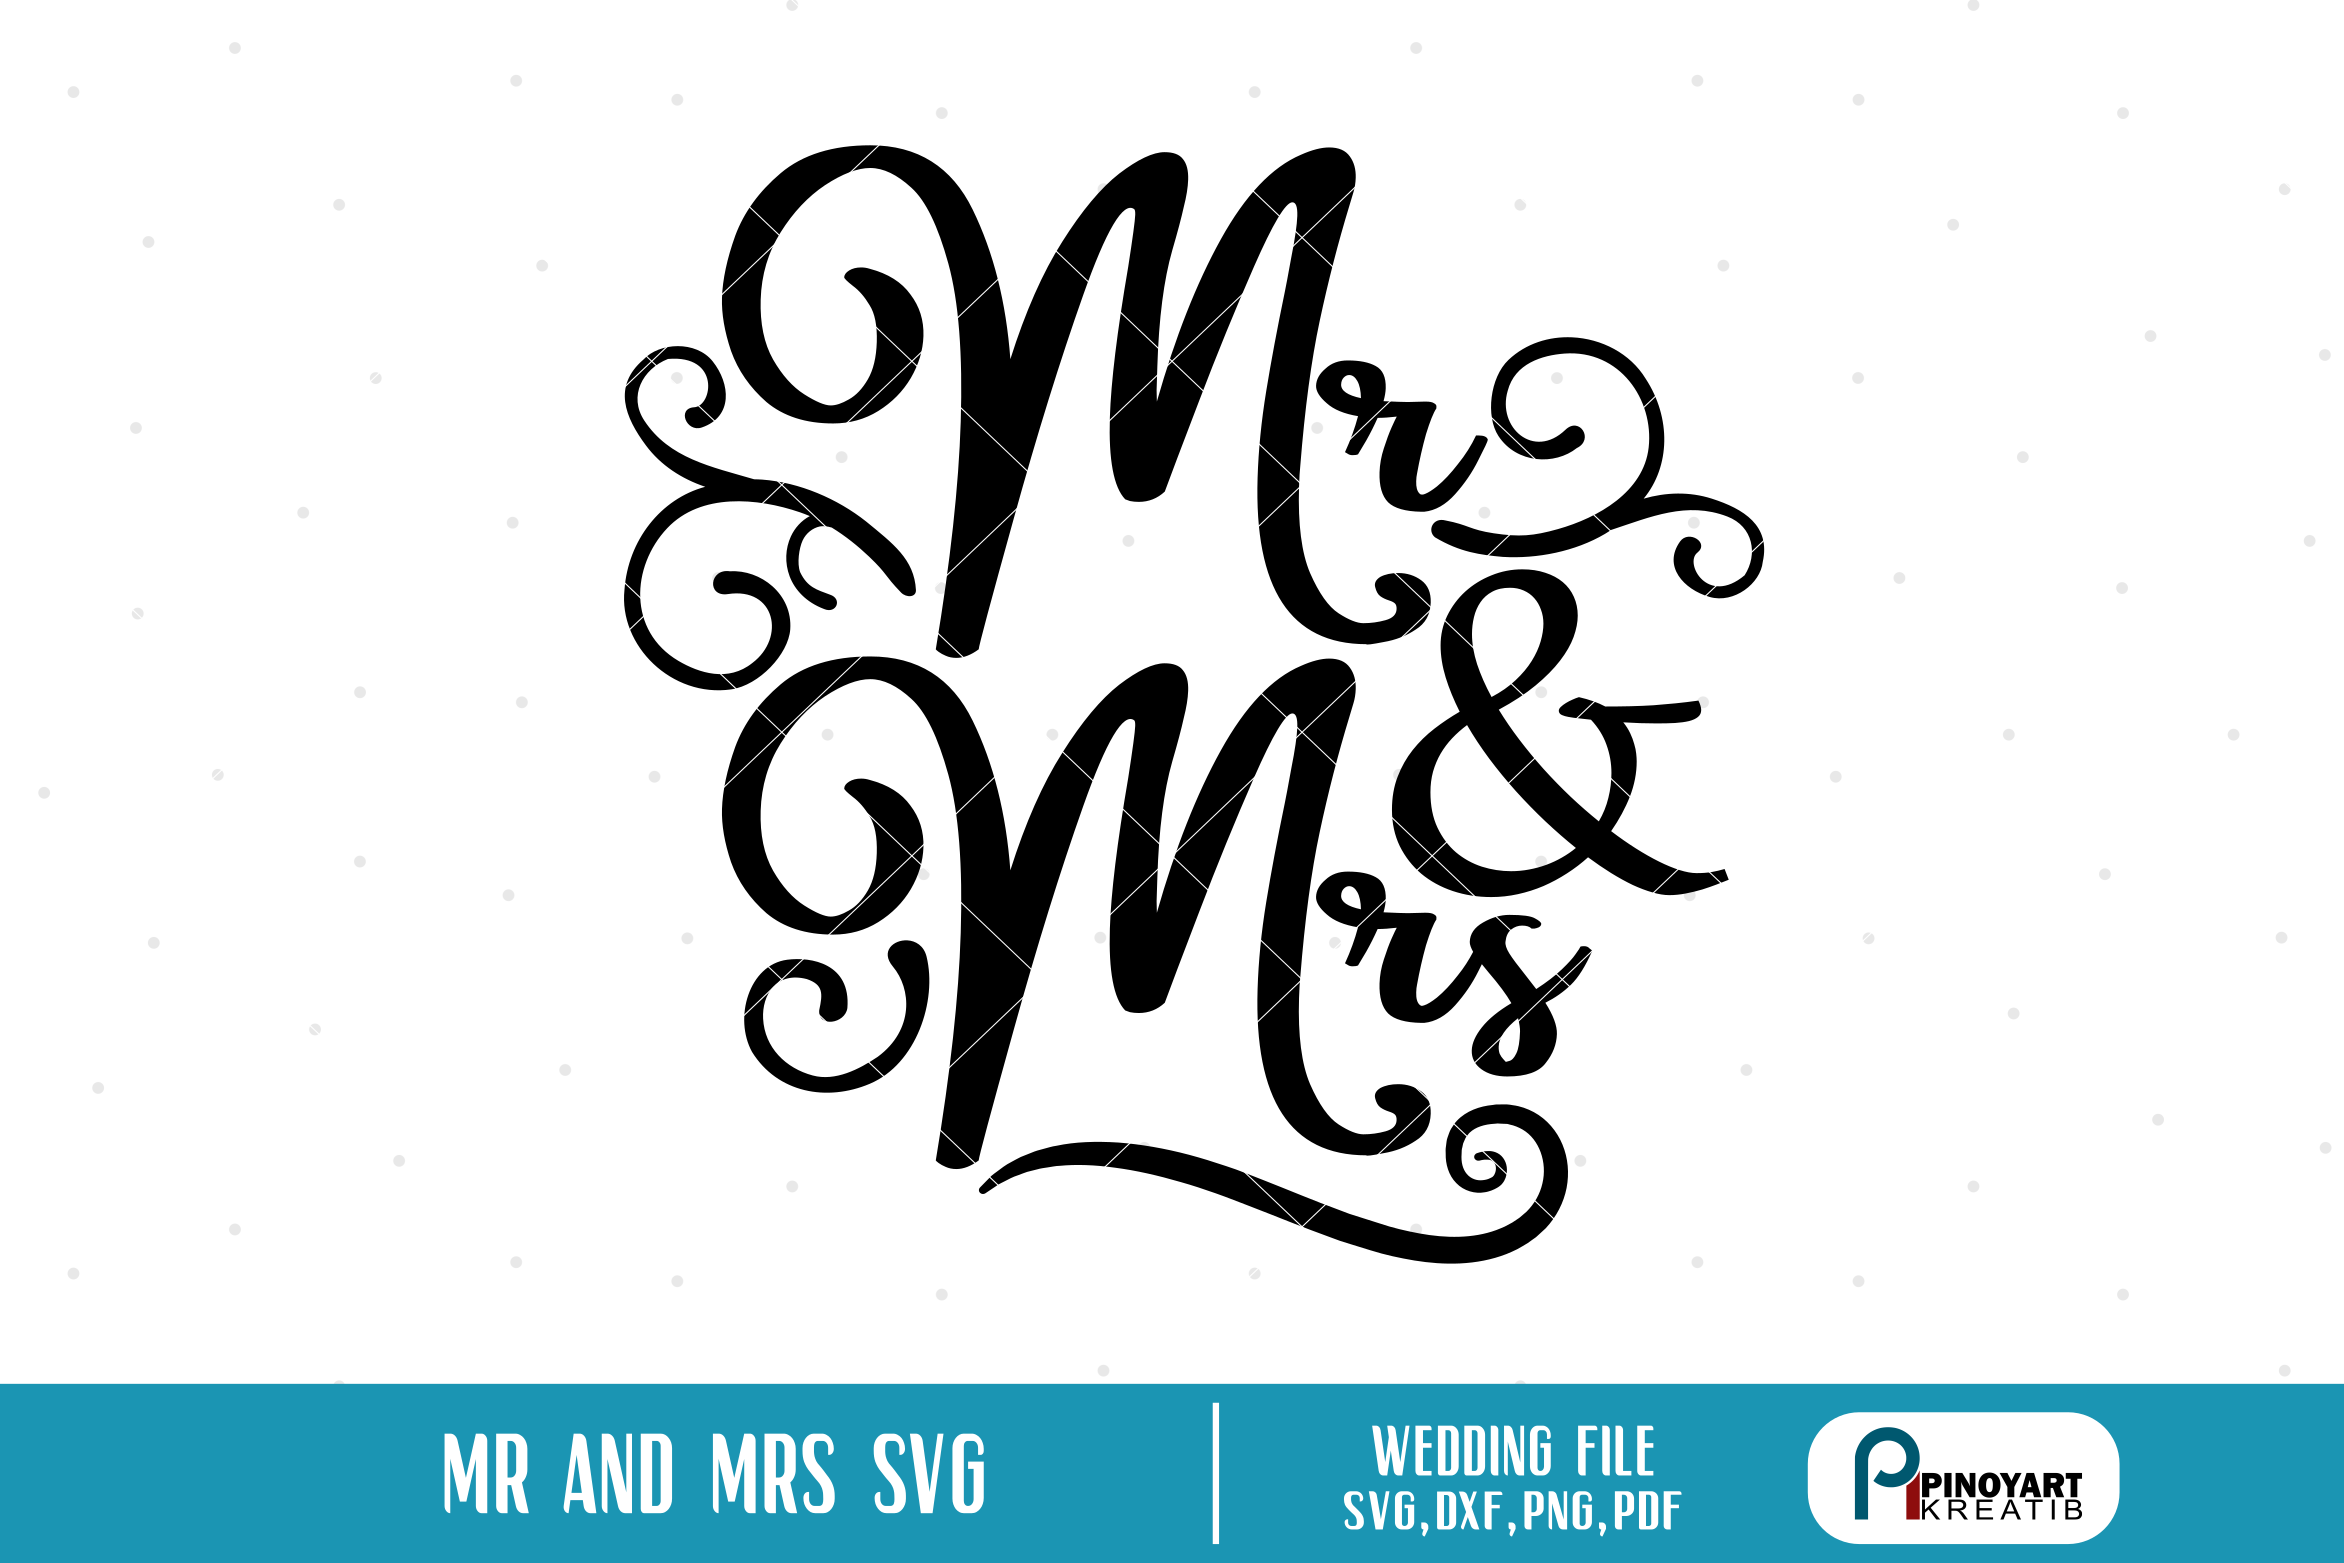 Download mr and mrs svg, mr and mrs svg file, wedding svg, wedding